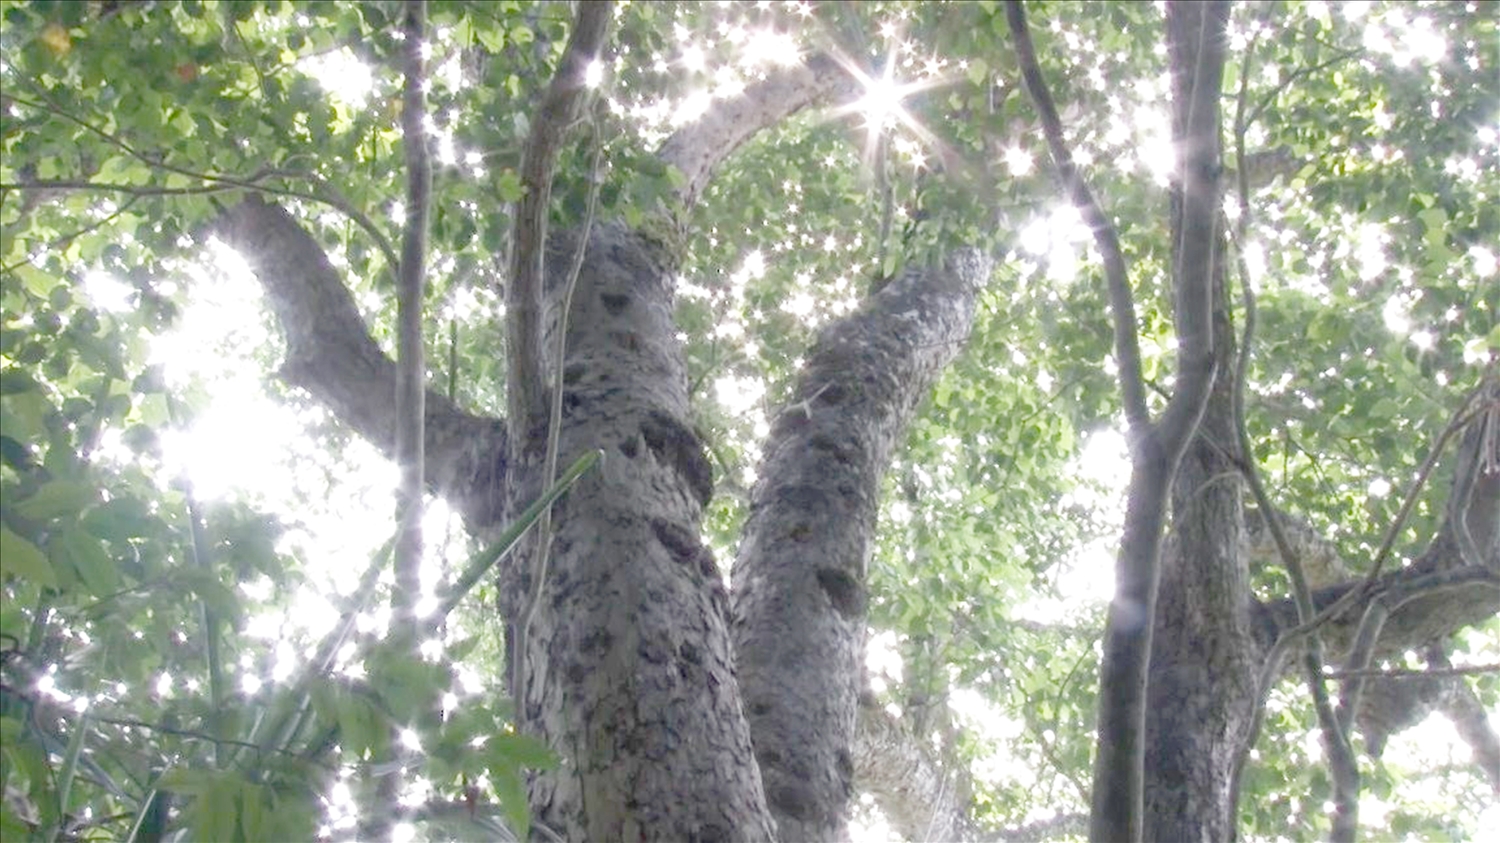 Khu rừng nghiến nguyên sinh Đông Đằng đã được công nhận là khu bảo tồn loài - sinh cảnh Bắc Sơn được quy hoạch, bảo vệ